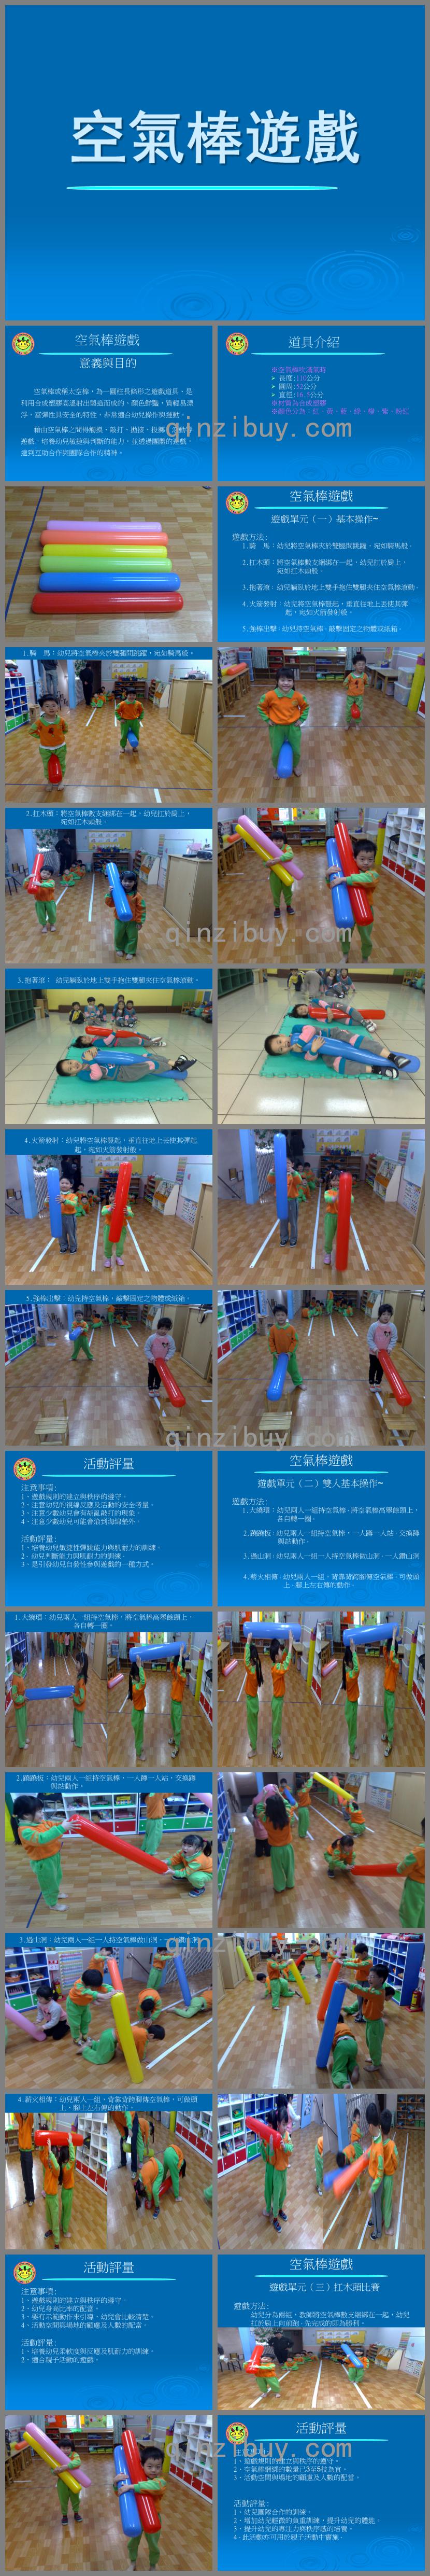 幼儿园游戏空气棒游戏PPT课件